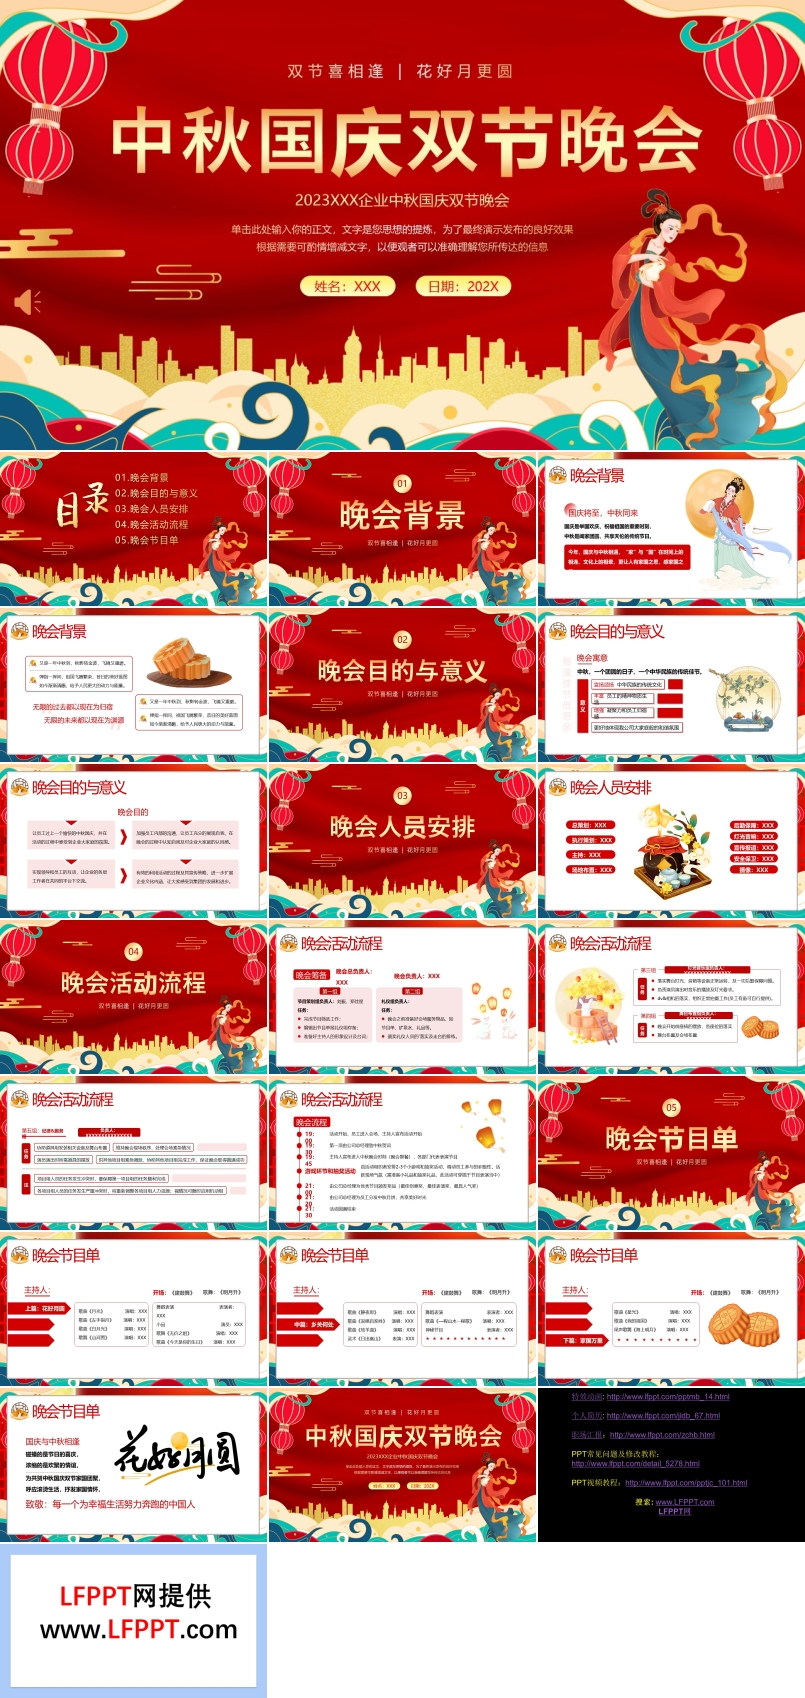 中秋节国庆节联欢晚会活动策划PPT模板